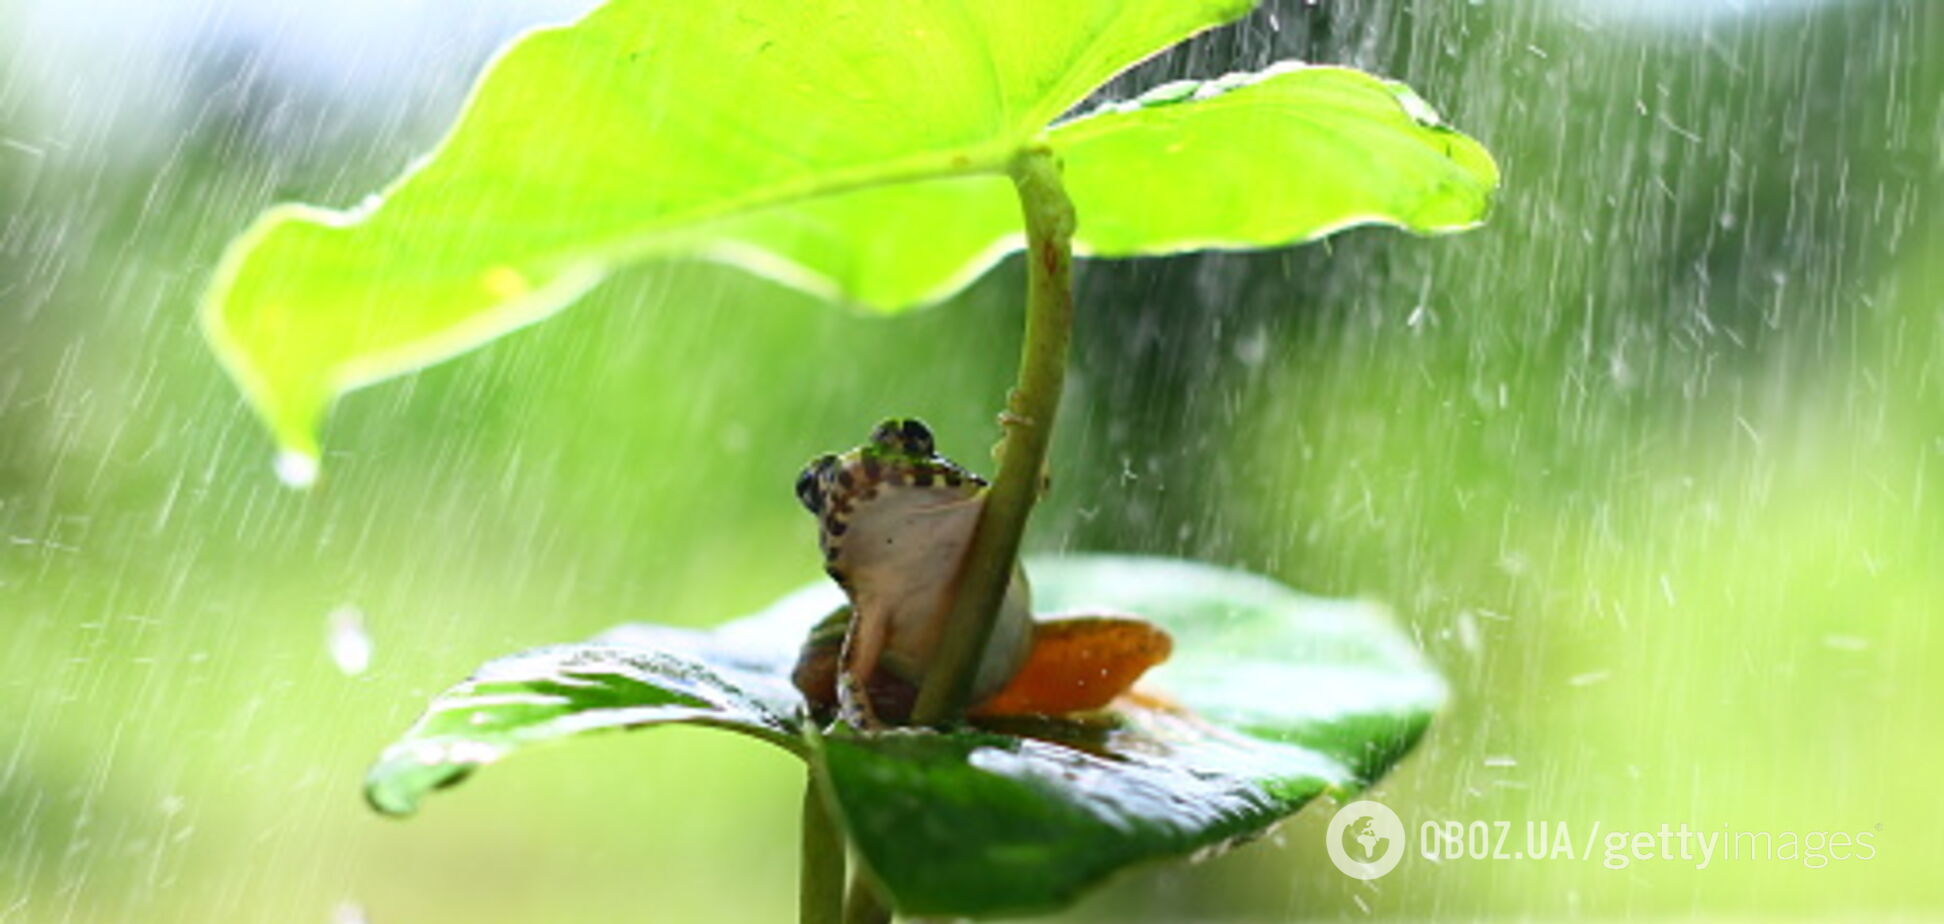 Днепр зальет дождями: синоптики уточнили прогноз на 27 мая